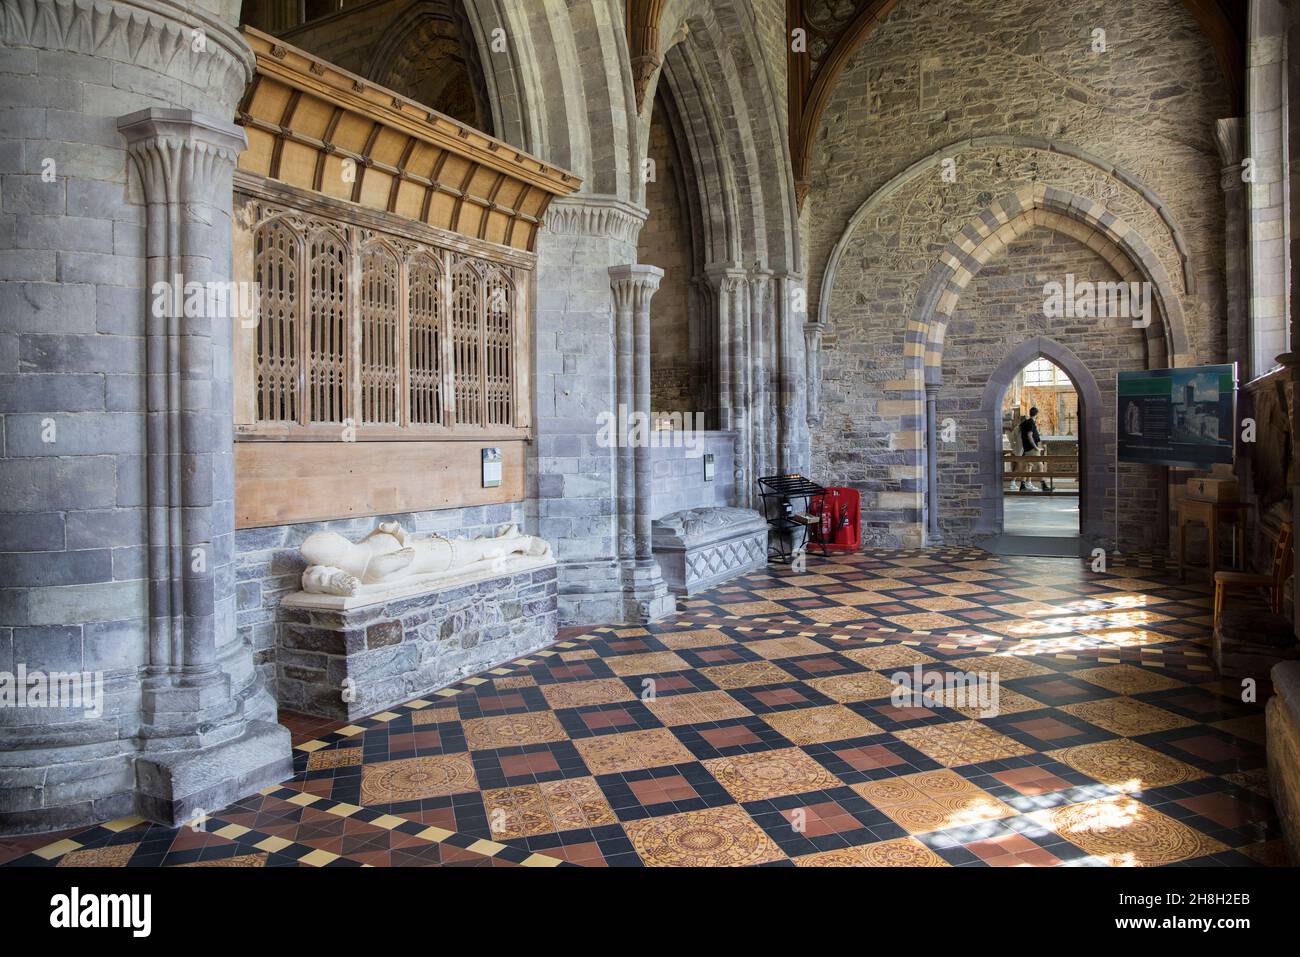 Pavimento piastrellato e tombe, Cattedrale di St Davids, Pembrokeshire, Galles, Regno Unito Foto Stock